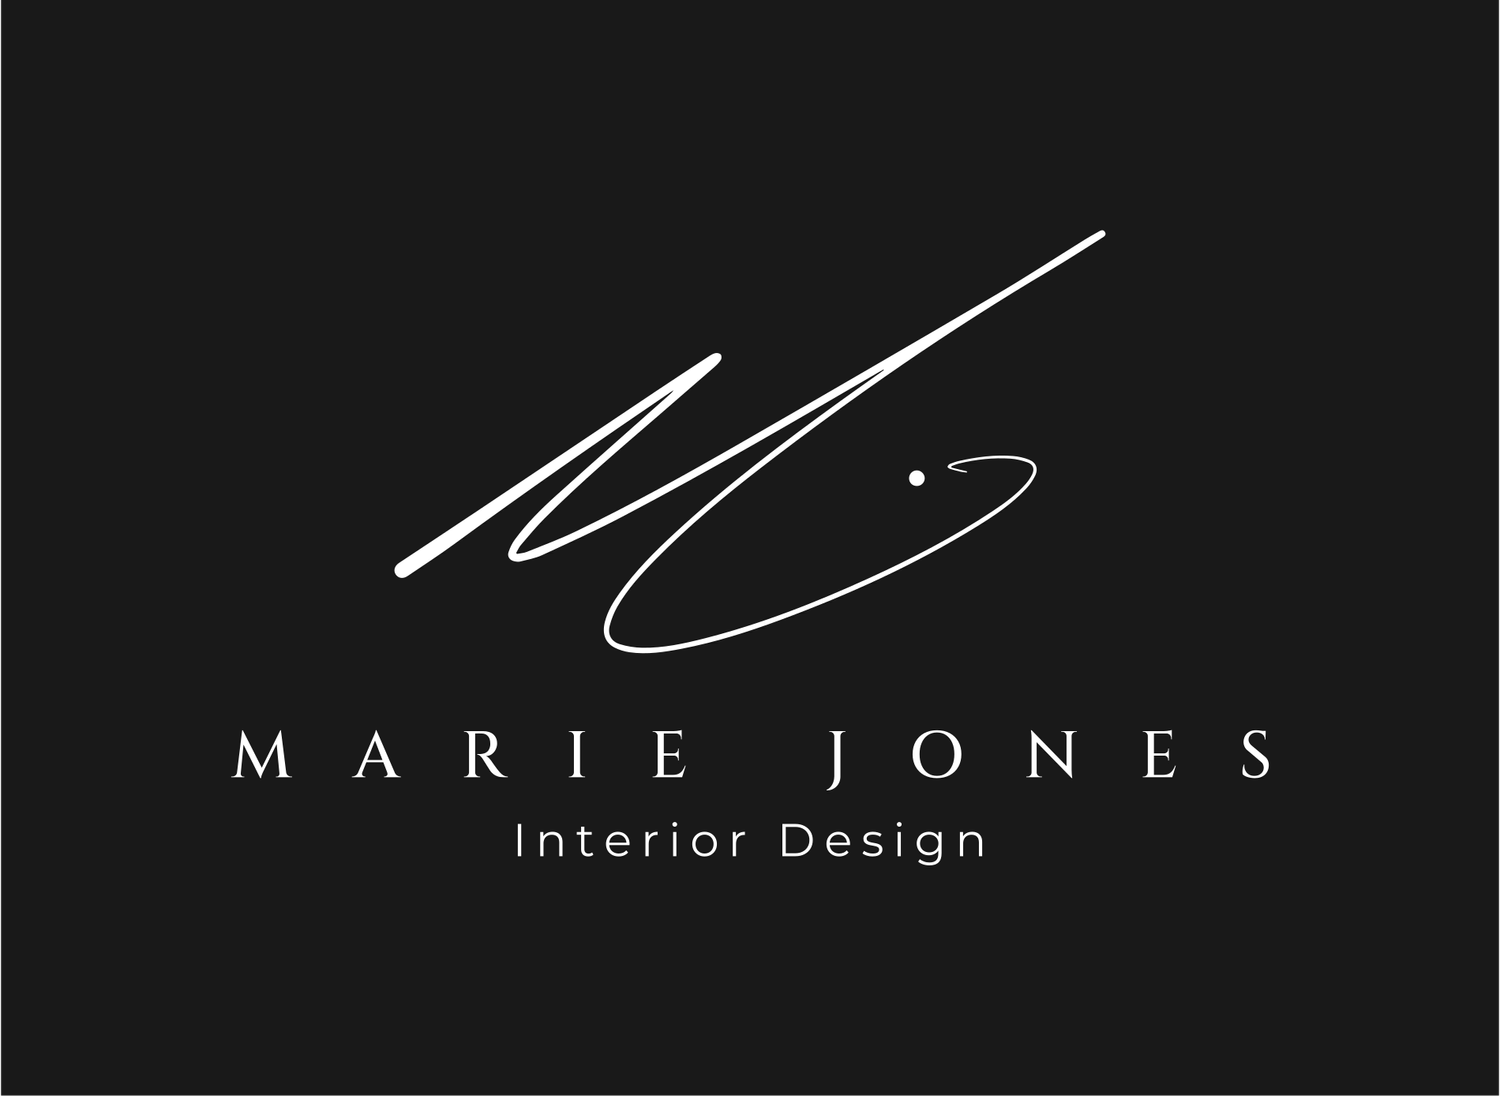 Marie Jones Interior Design